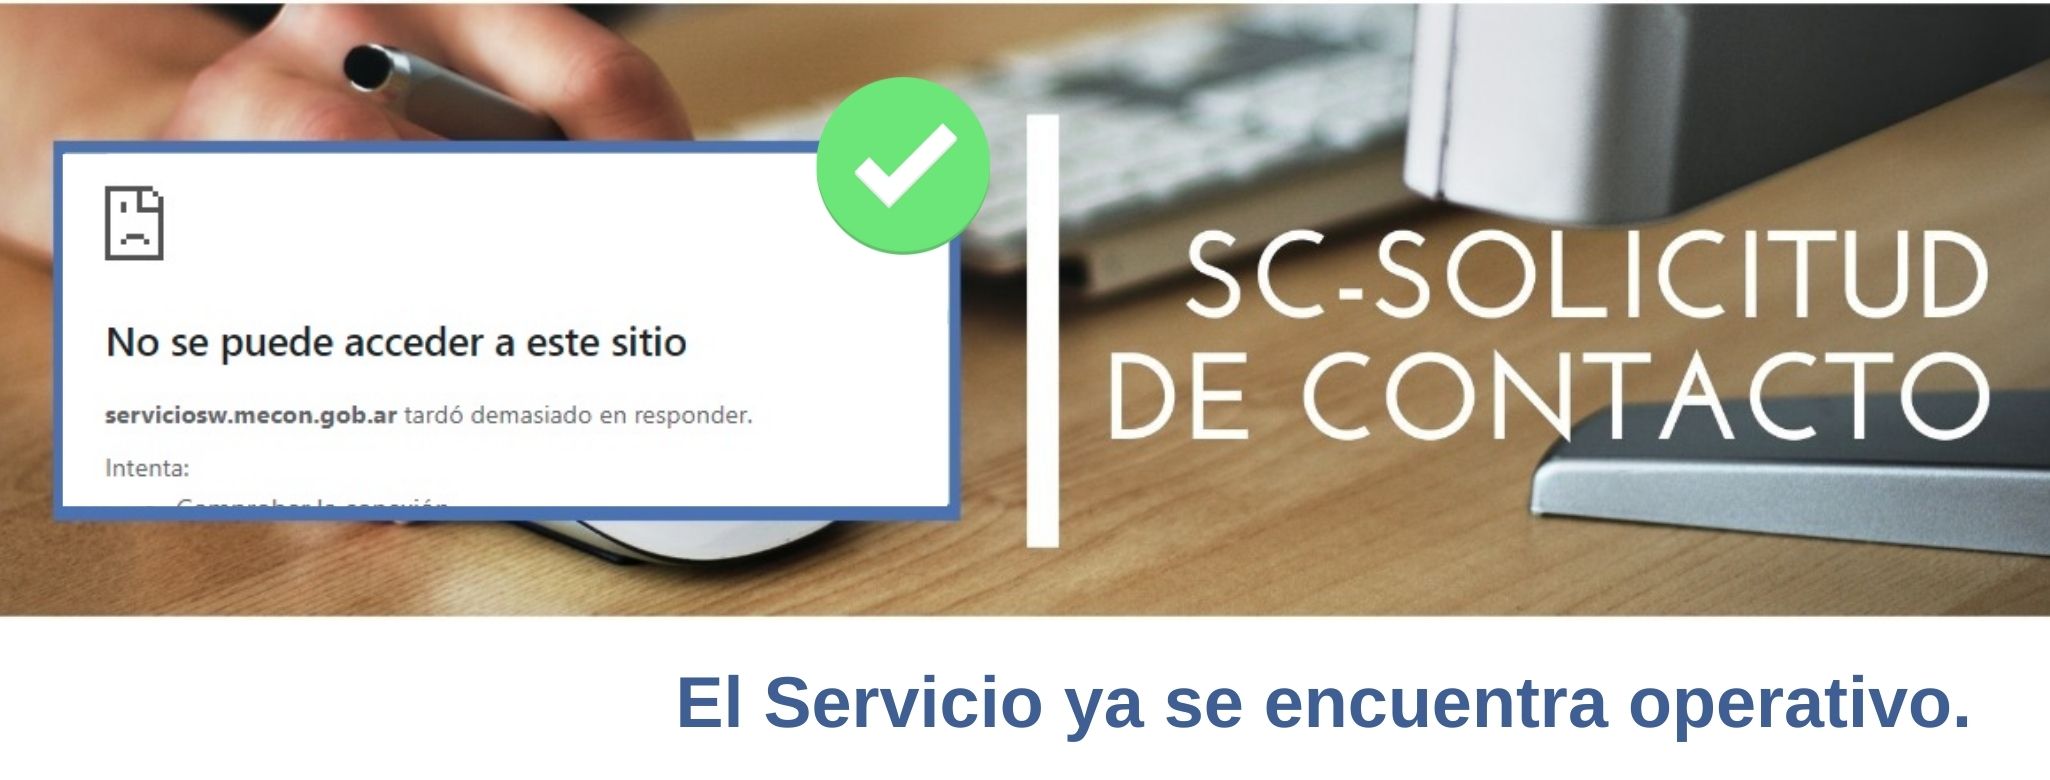 GESTIONES CDA: Se normalizó el funcionamiento del servicio “SC-Solicitud de Contacto”